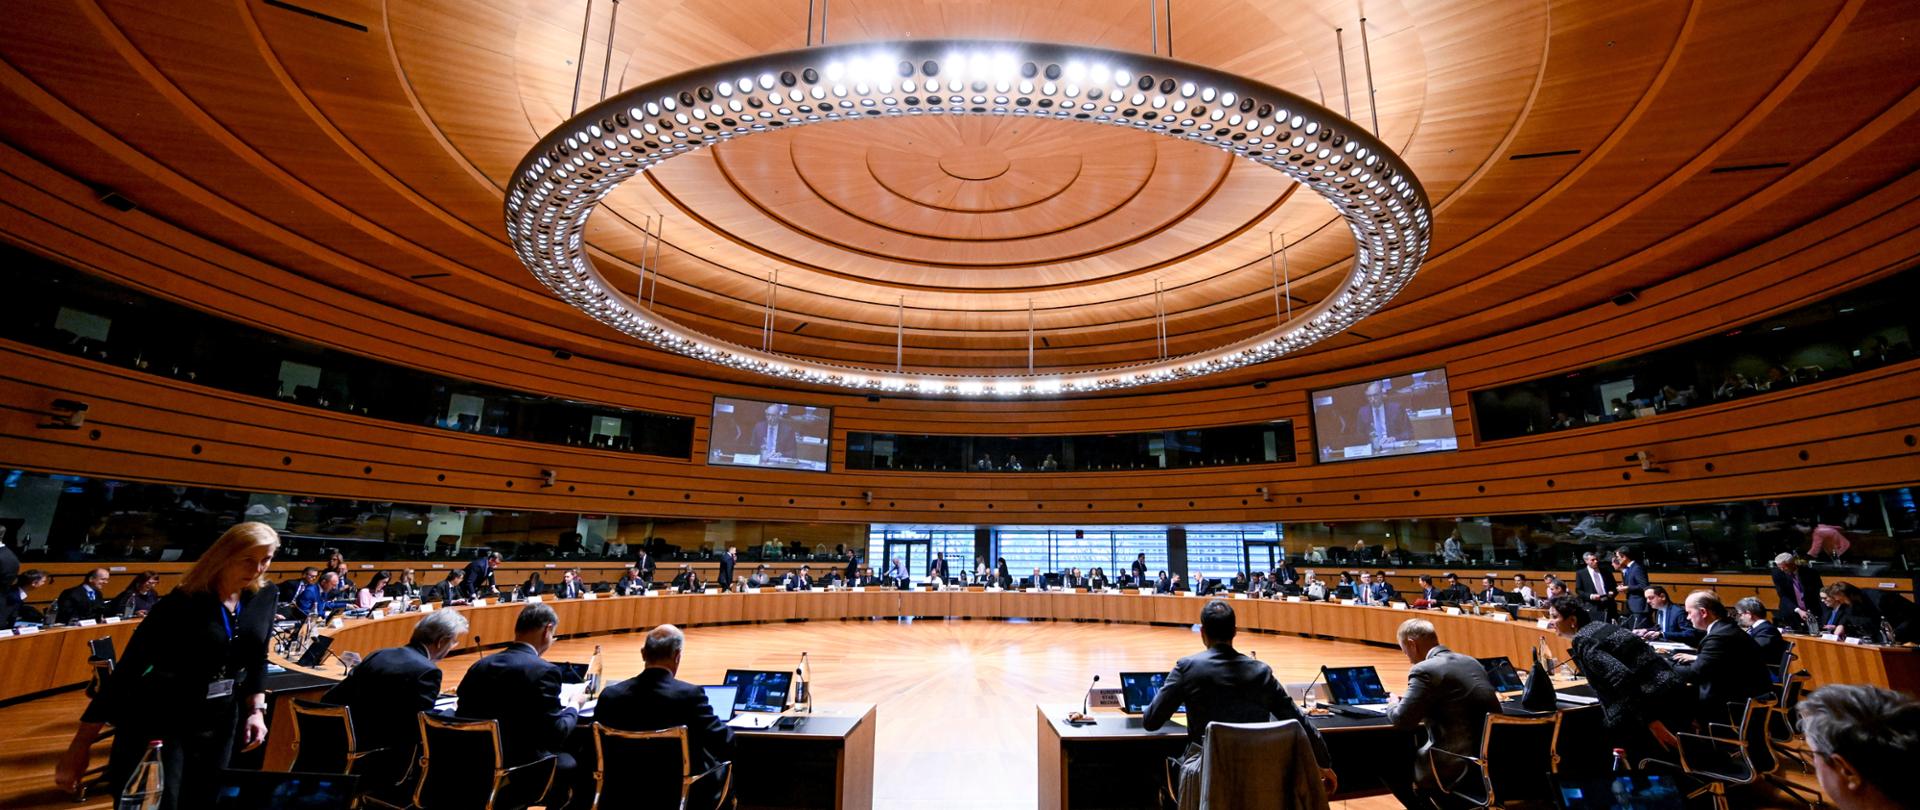 Uczestnicy Rady ECOFIN zgromadzeni przy okrągłym stole